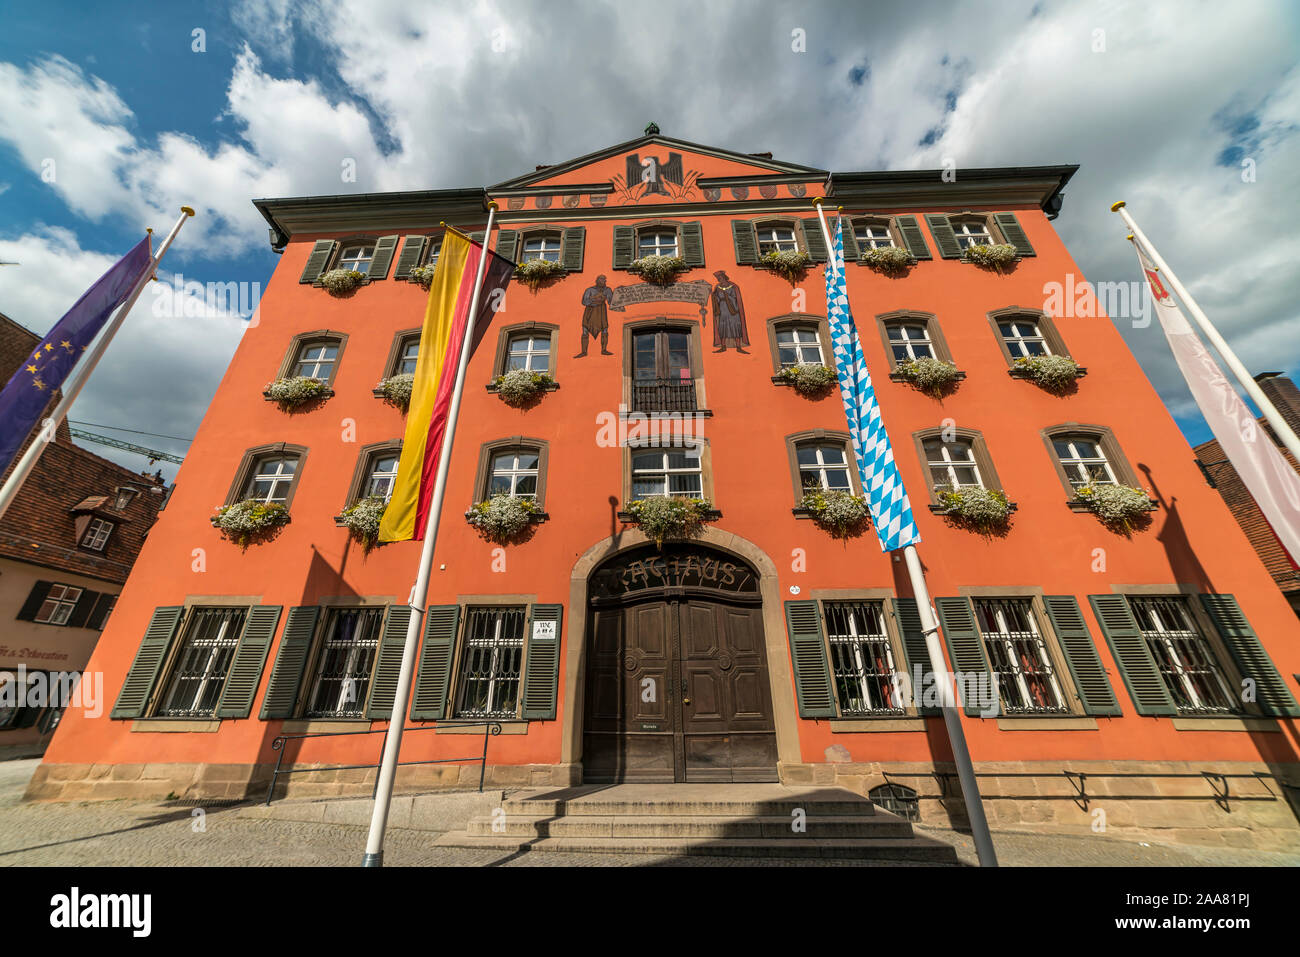 Das Rathaus von Dinkelsbühl, Mittelfranken, Bayern, Deutschland  |  Dinkelsbühl town hall, Middle Franconia, Bavaria, Germany Stock Photo